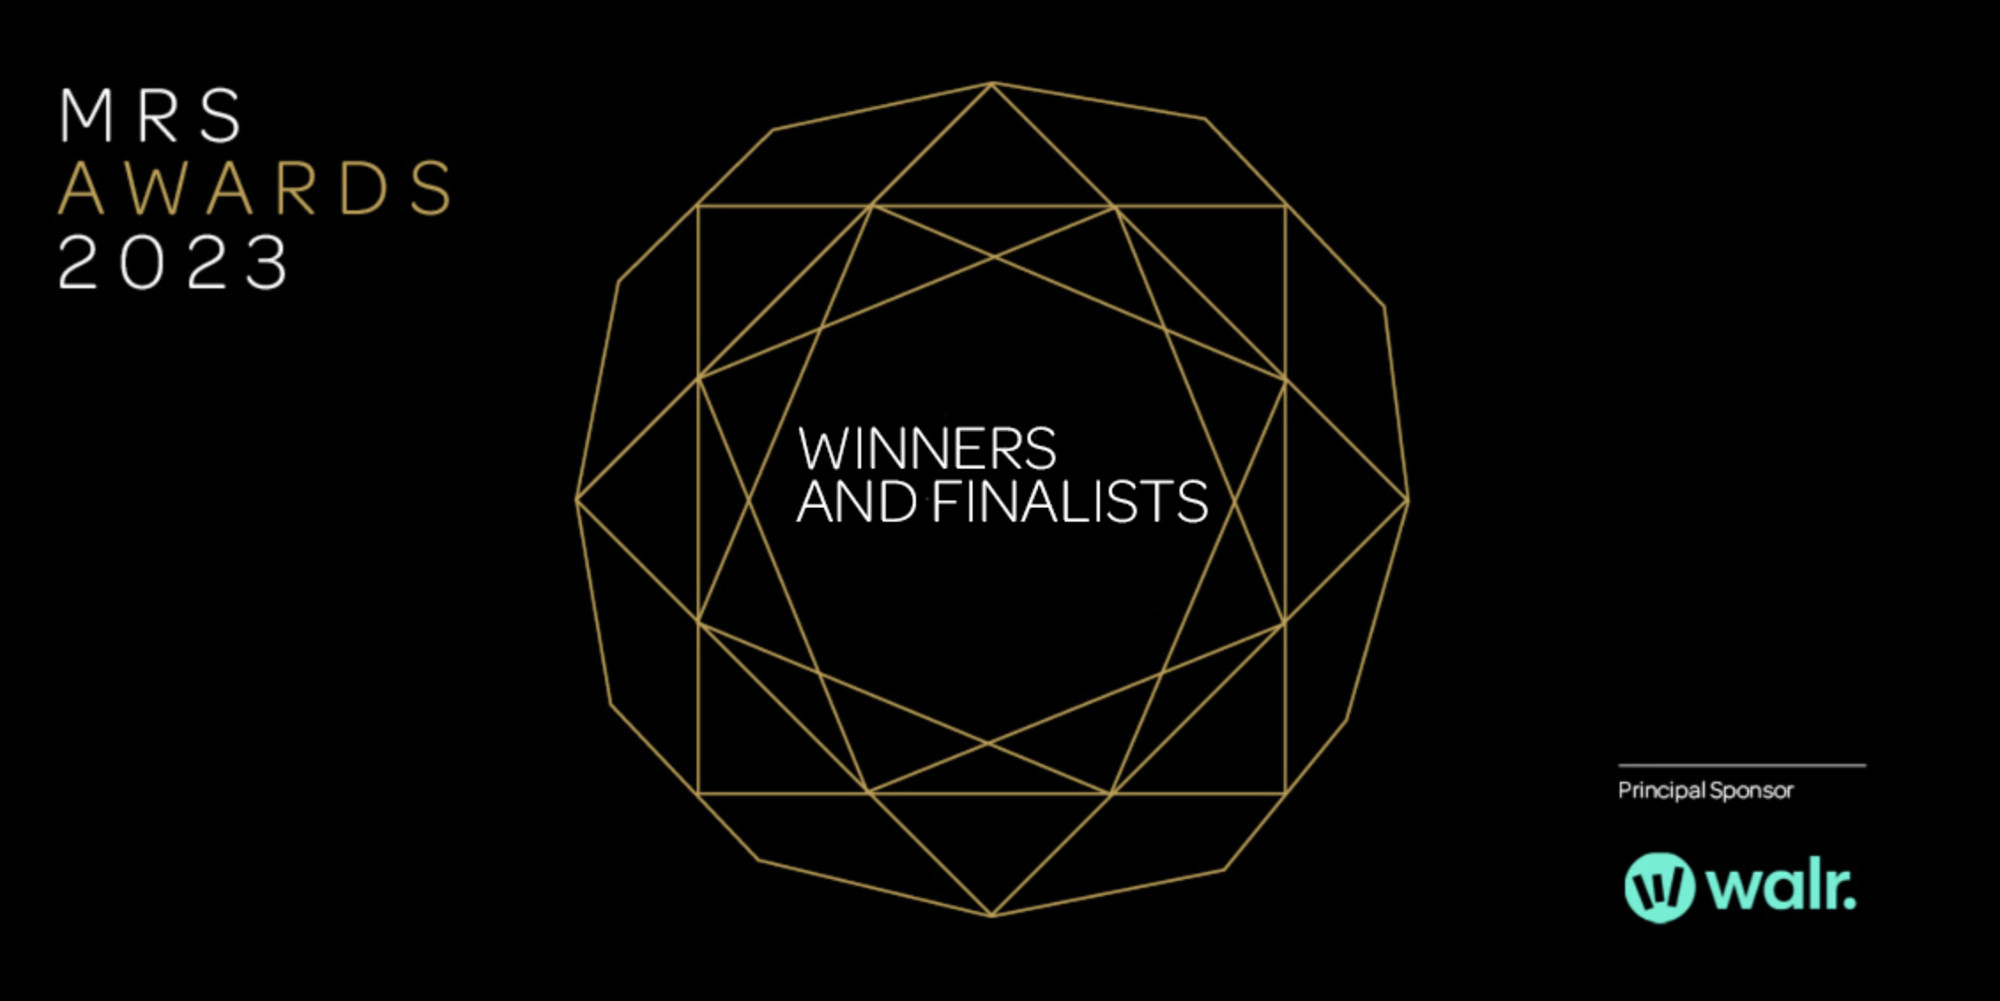 Mrs-awards-banner-winners-2023-3